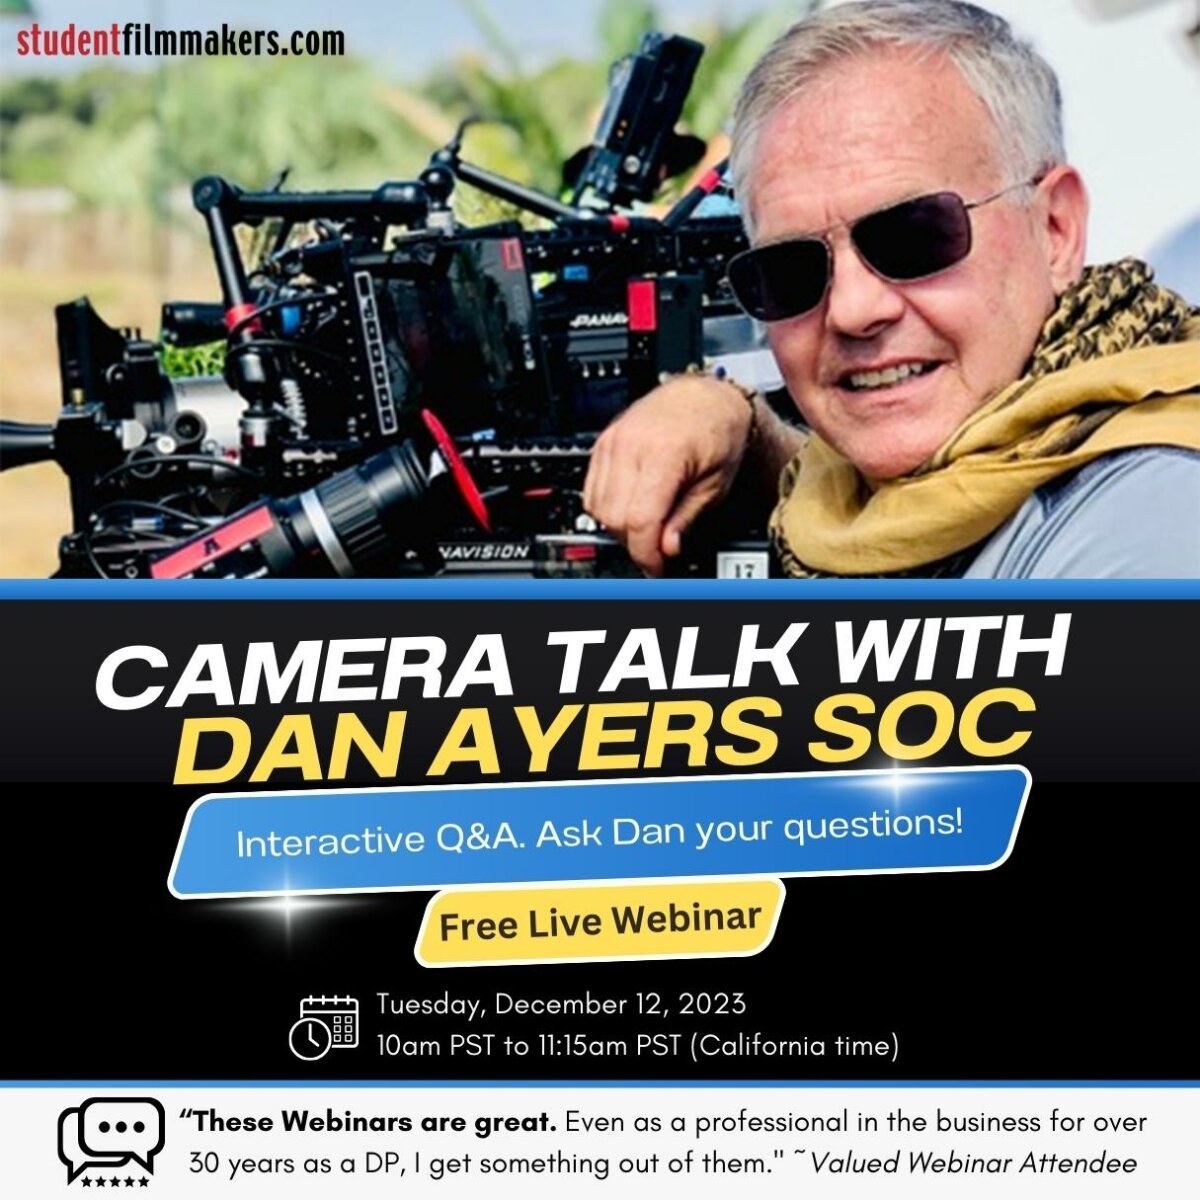 Live Webinar, Camera Talk with Dan Ayers SOC, Interactive Q&A